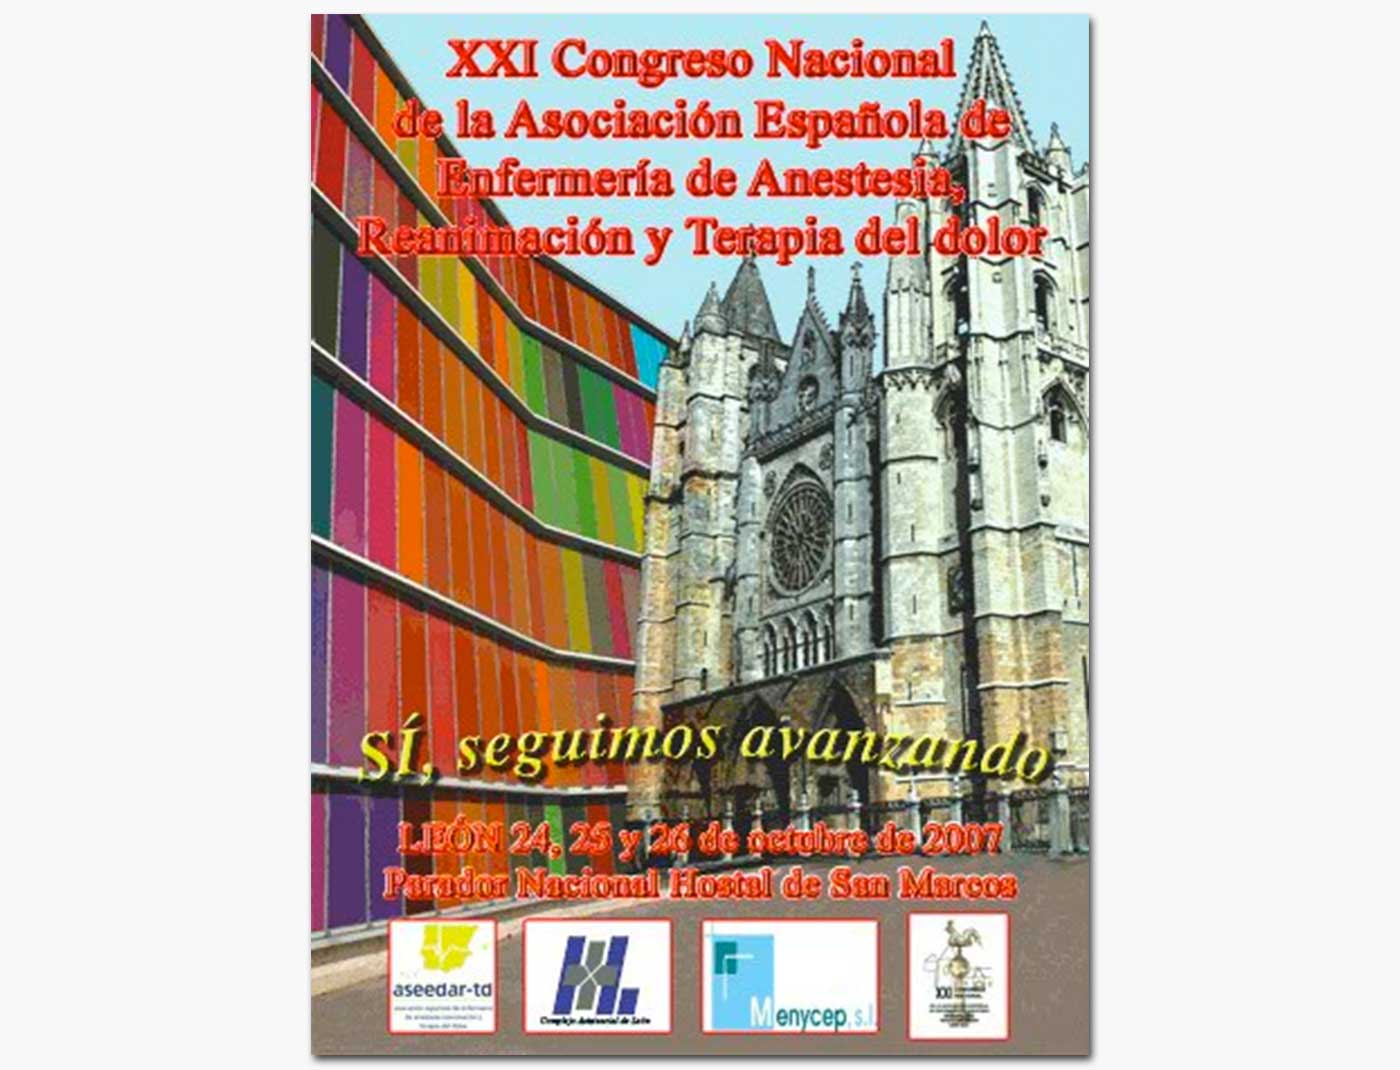 XXI Congreso Nacional de la Asociación Española de Enfermería de Anestesia, Reanimación y Terapia del Dolor